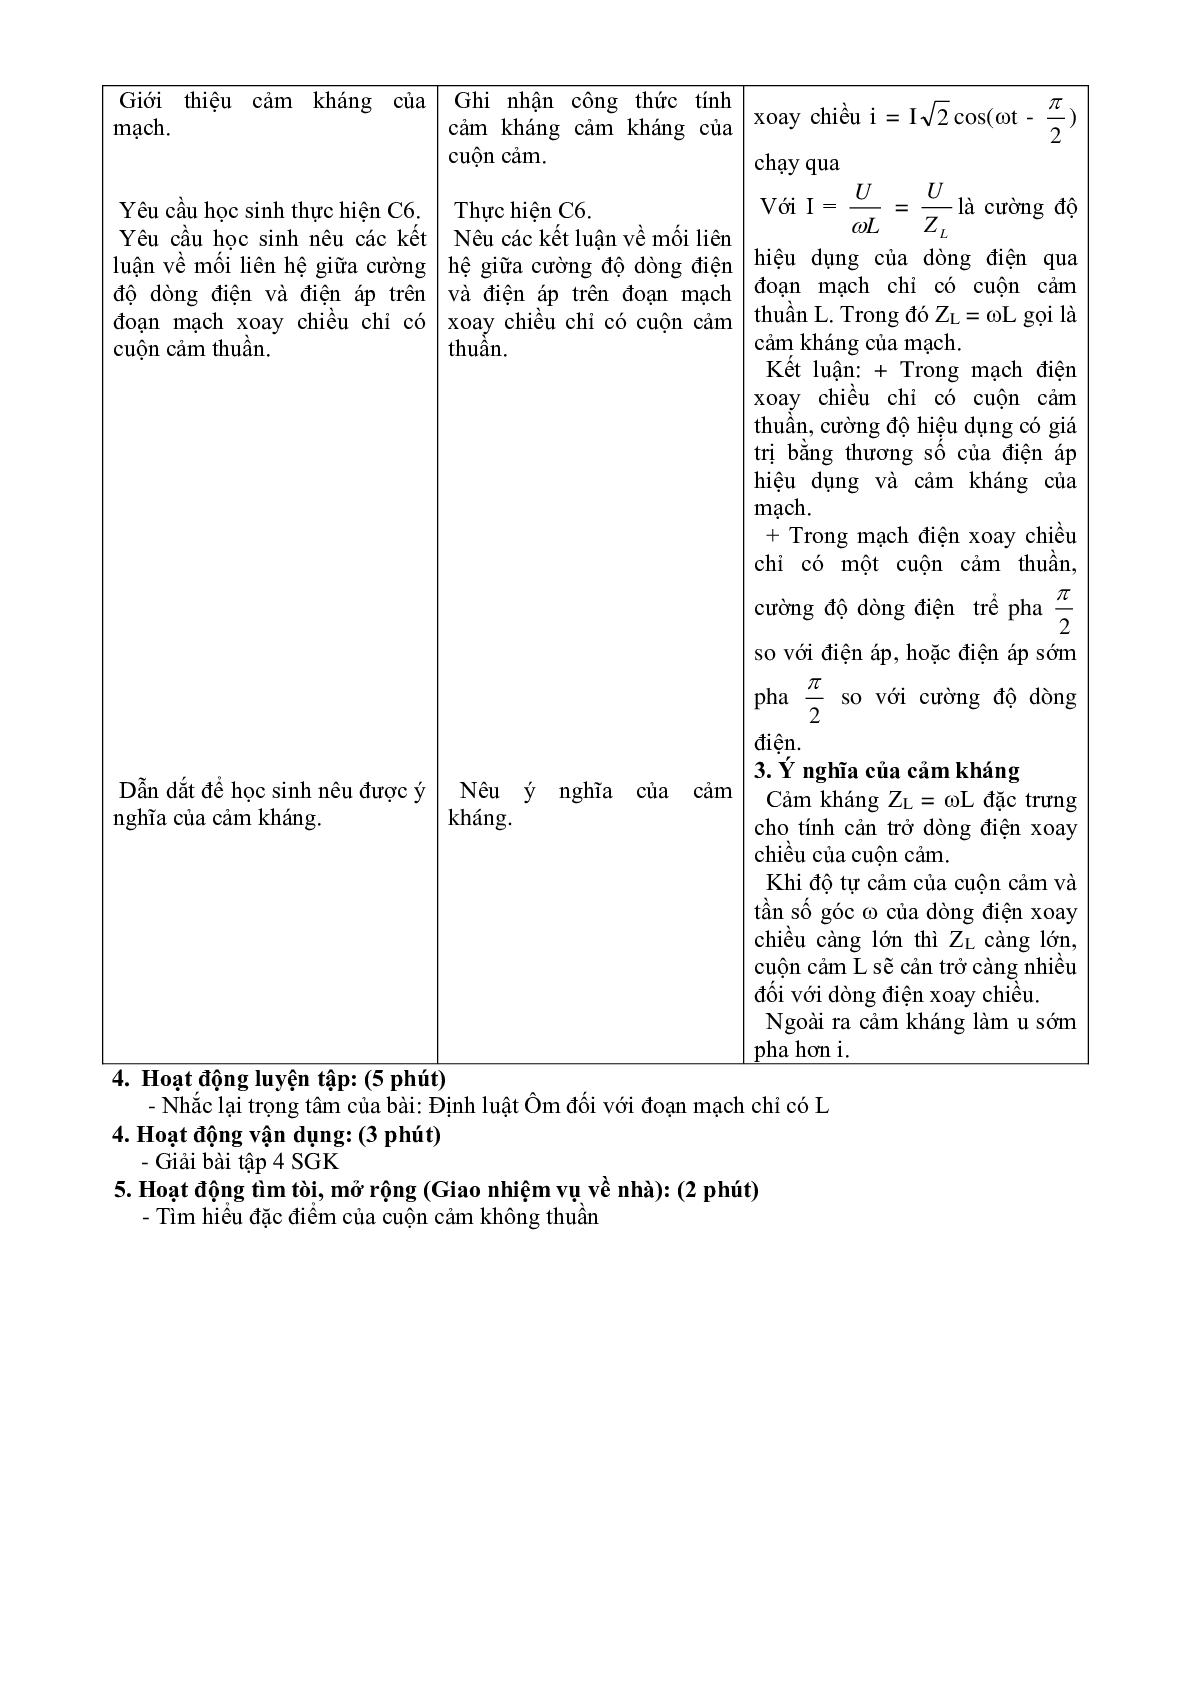 Giáo án Vật Lí 12 Bài 13 CÁC MẠCH ĐIỆN XOAY CHIỀU mới nhất (trang 5)